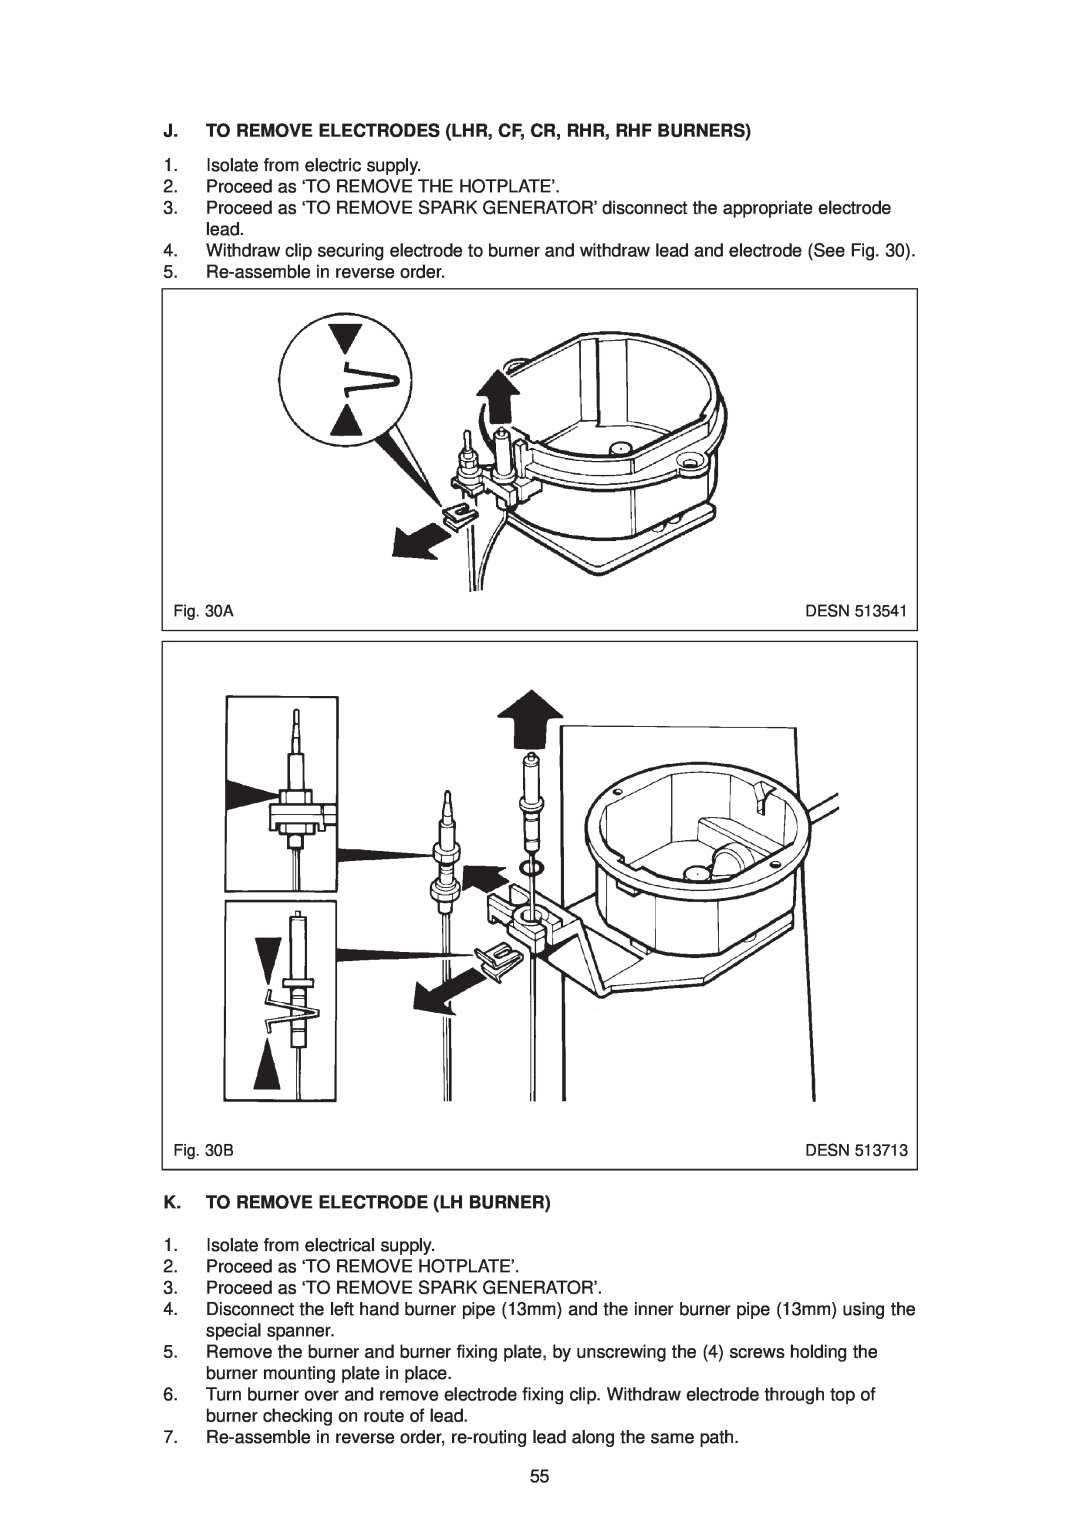 Aga Ranges dc6 owner manual J. To Remove Electrodes Lhr, Cf, Cr, Rhr, Rhf Burners, K. To Remove Electrode Lh Burner 